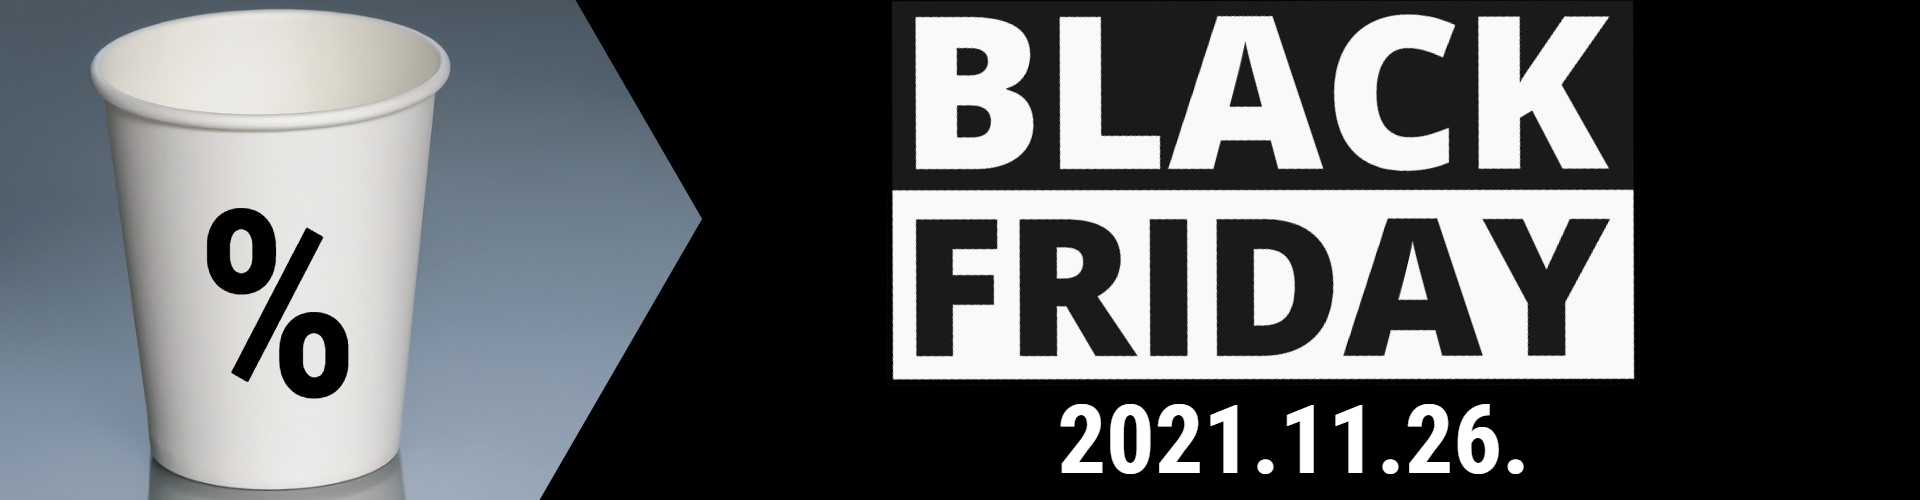 black fiday 2021 a coffeetogo-n is